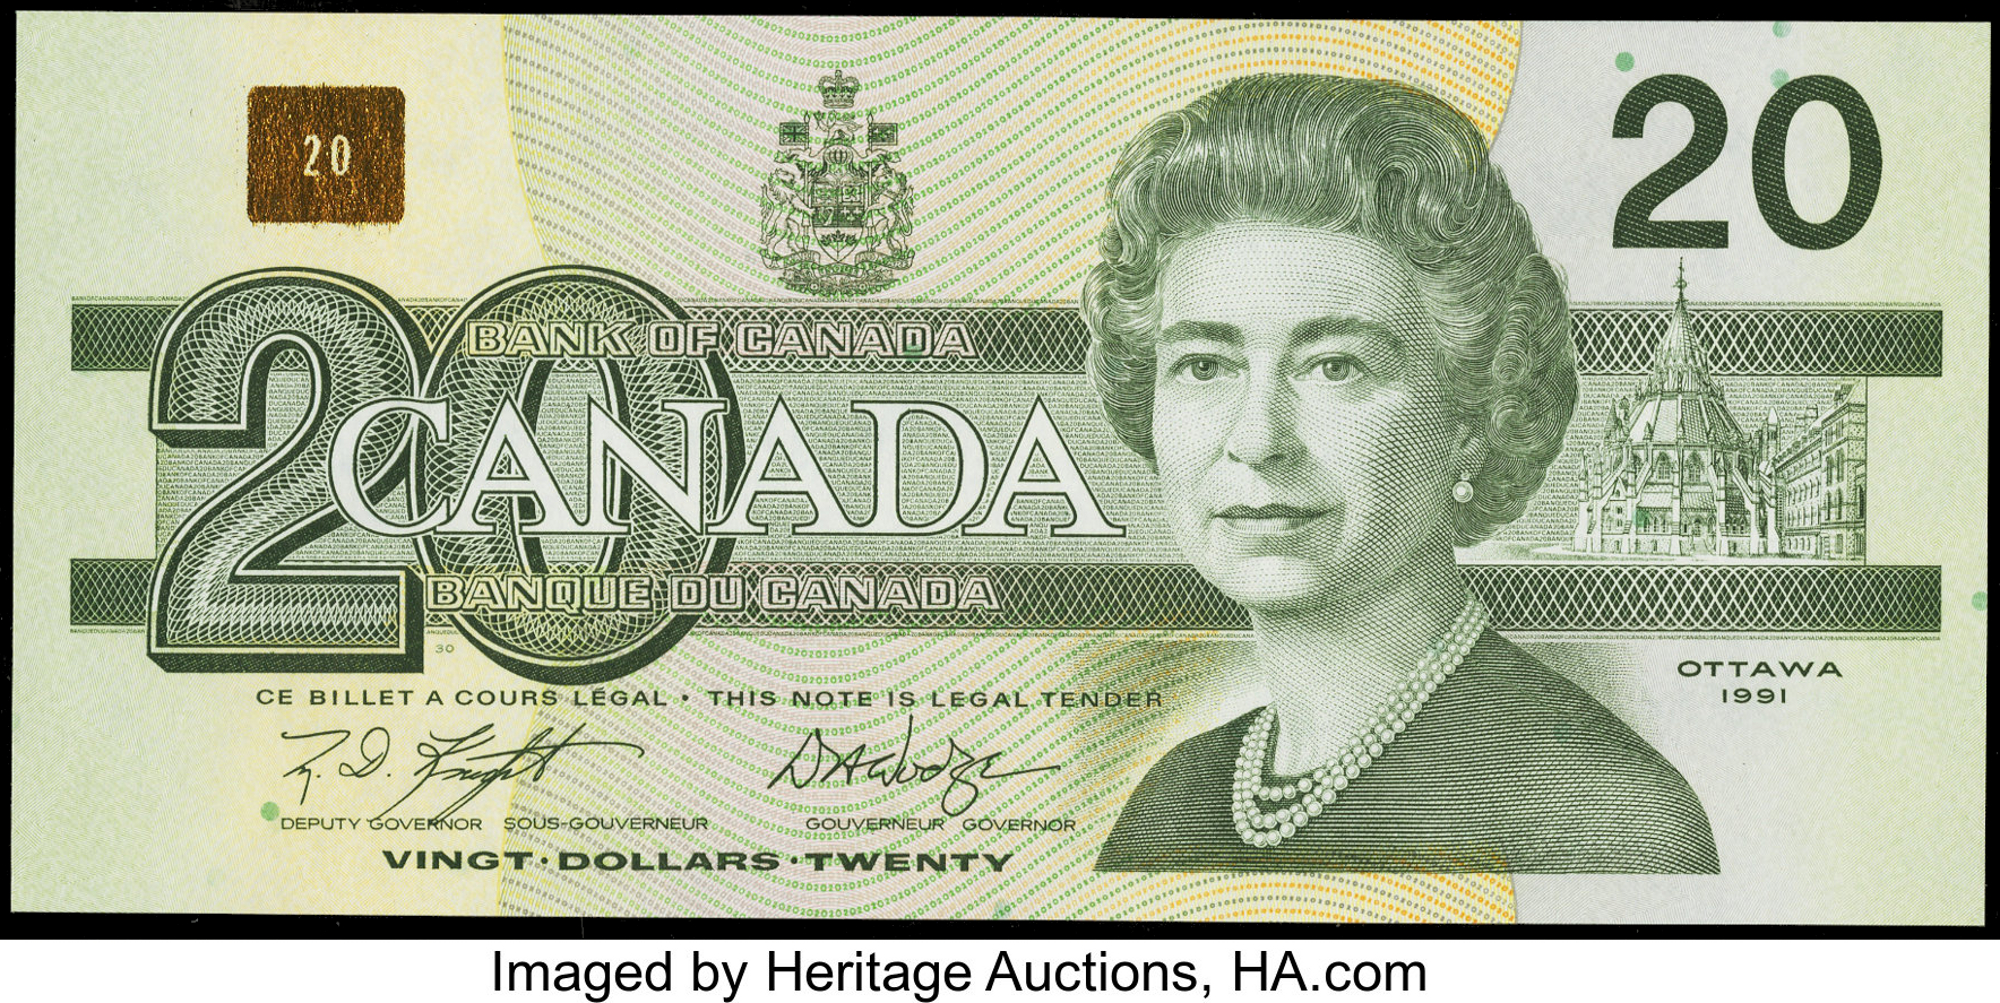 1986-1991 Bank of Canada Banknotes